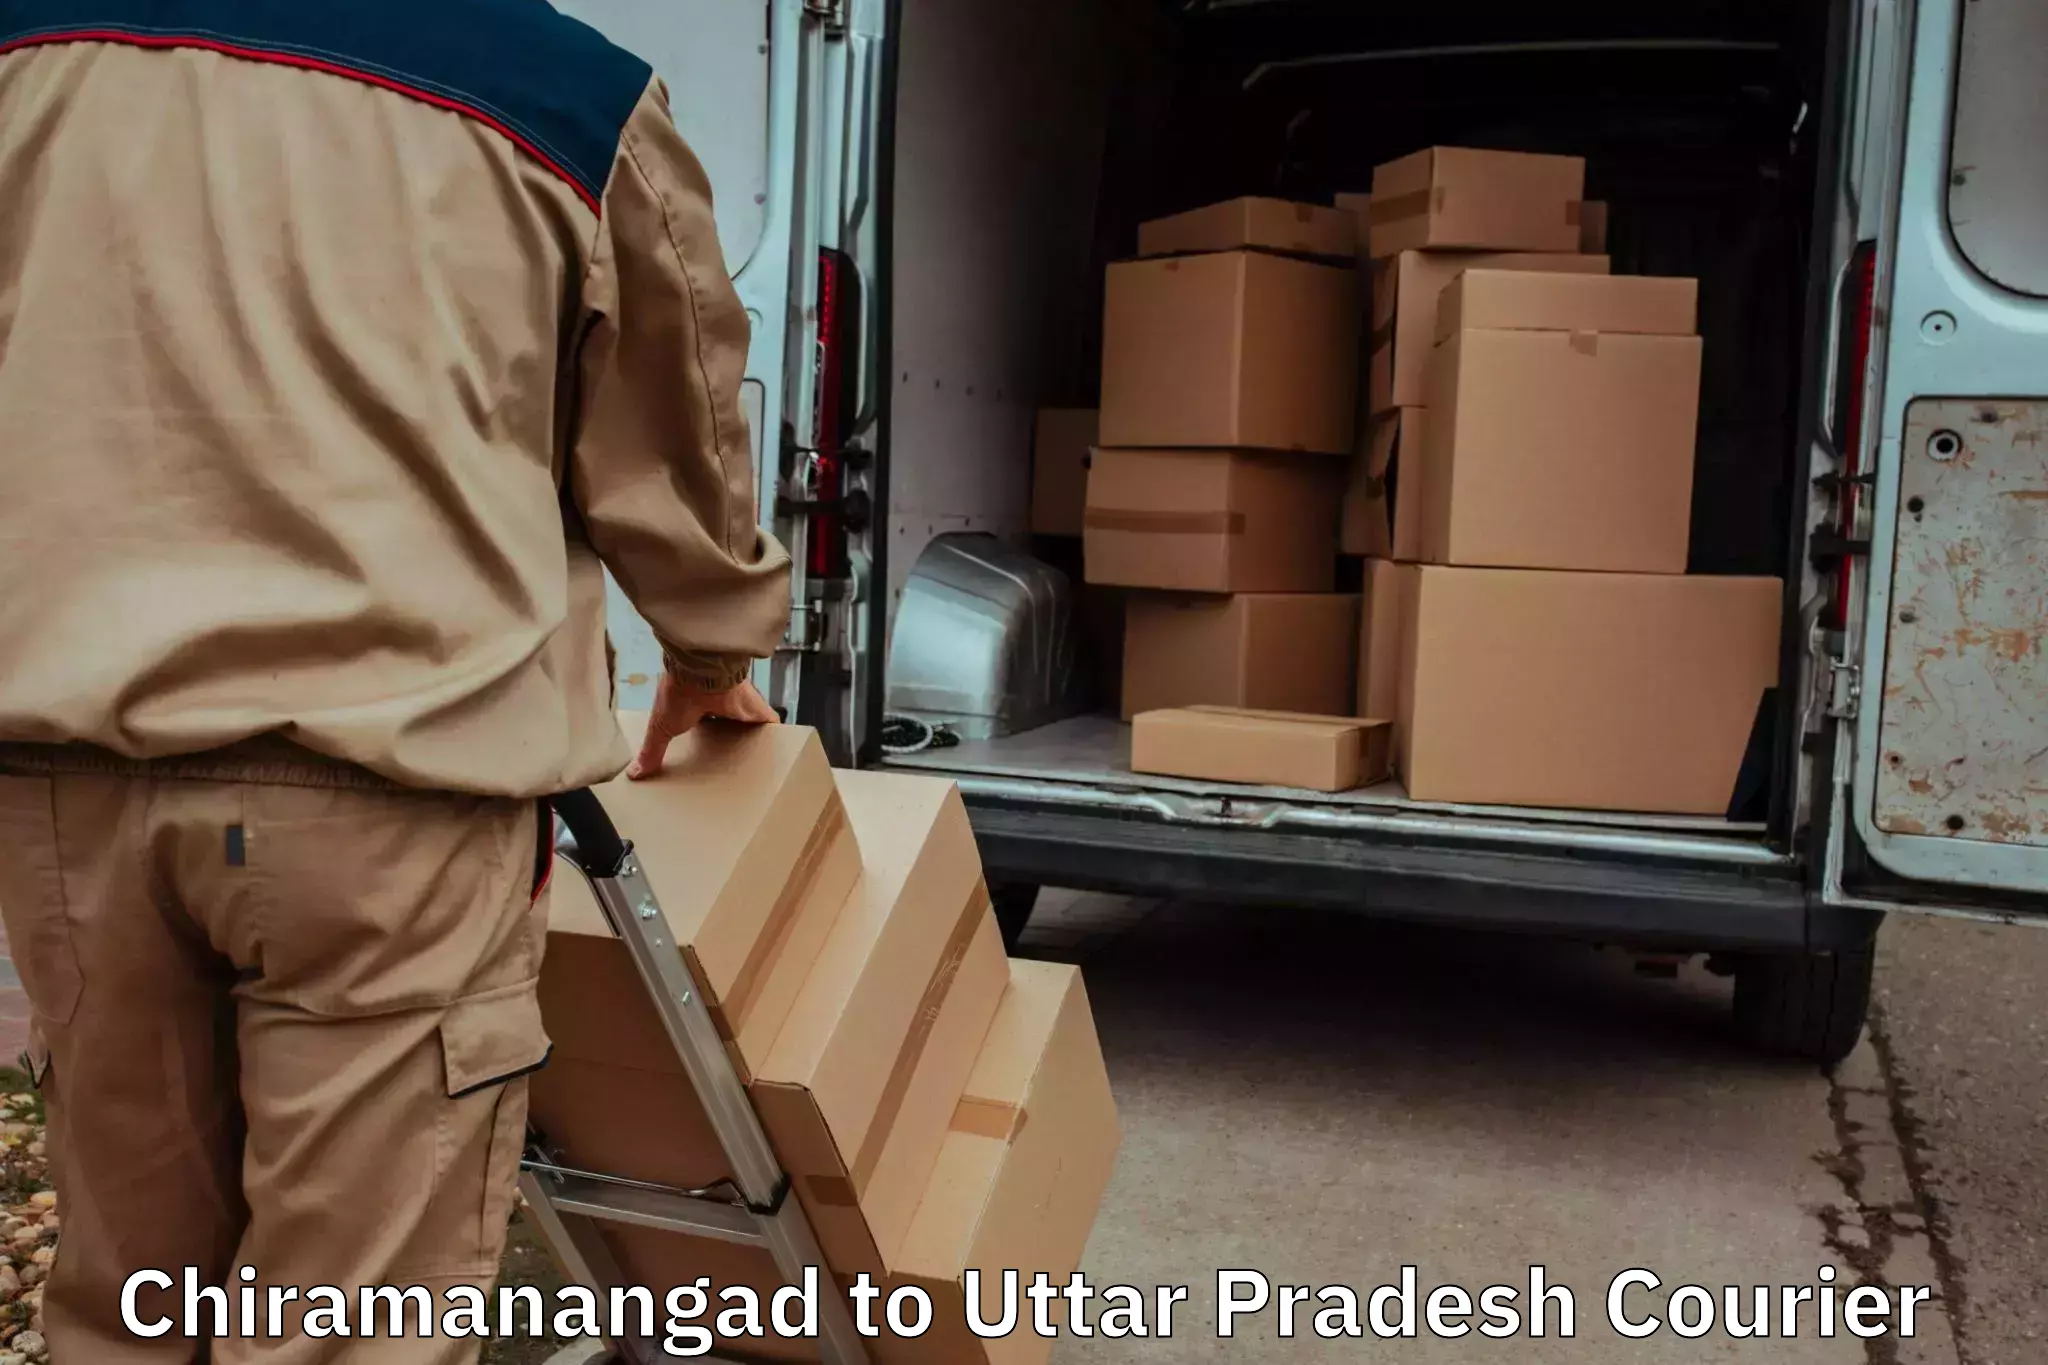 Furniture moving experts Chiramanangad to Sonbhadra